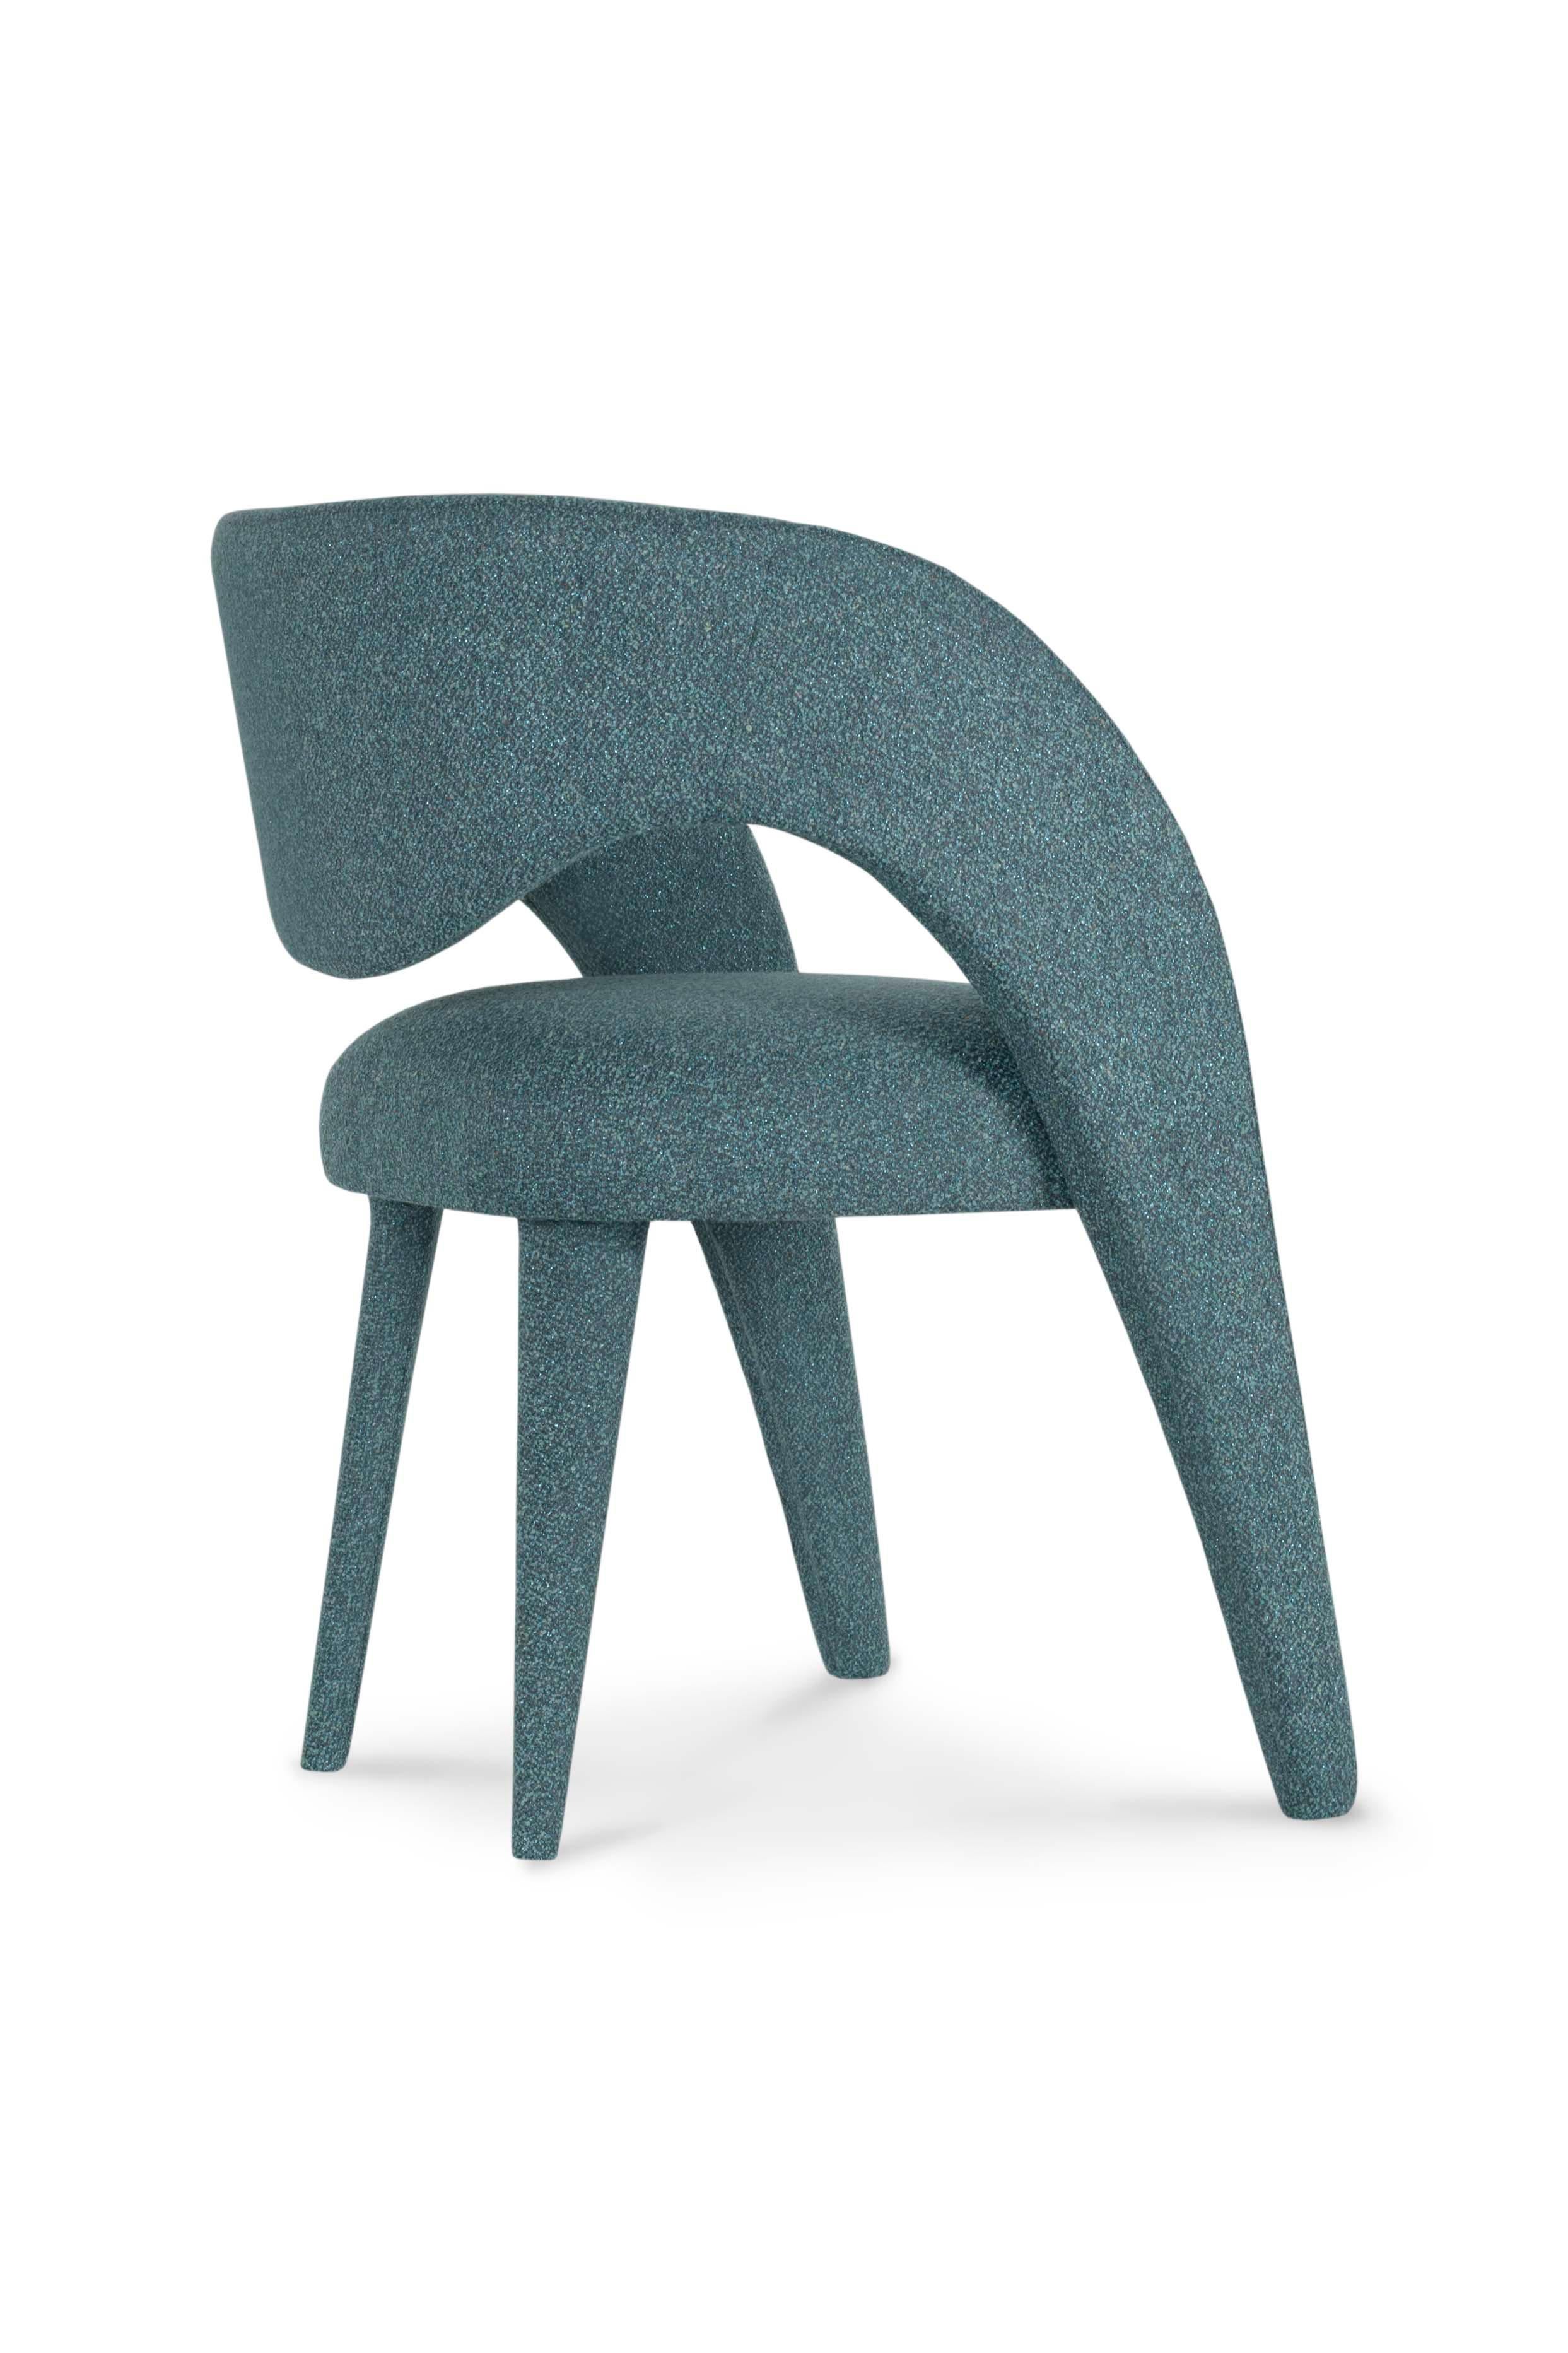 Laurence Chair, Collection'S Contemporary, handgefertigt in Portugal - Europa von Greenapple.

Der von Rute Martins für die Collection'S Contemporary entworfene moderne Esszimmerstuhl Laurence wurde mit der künstlerischen Absicht geschaffen, das